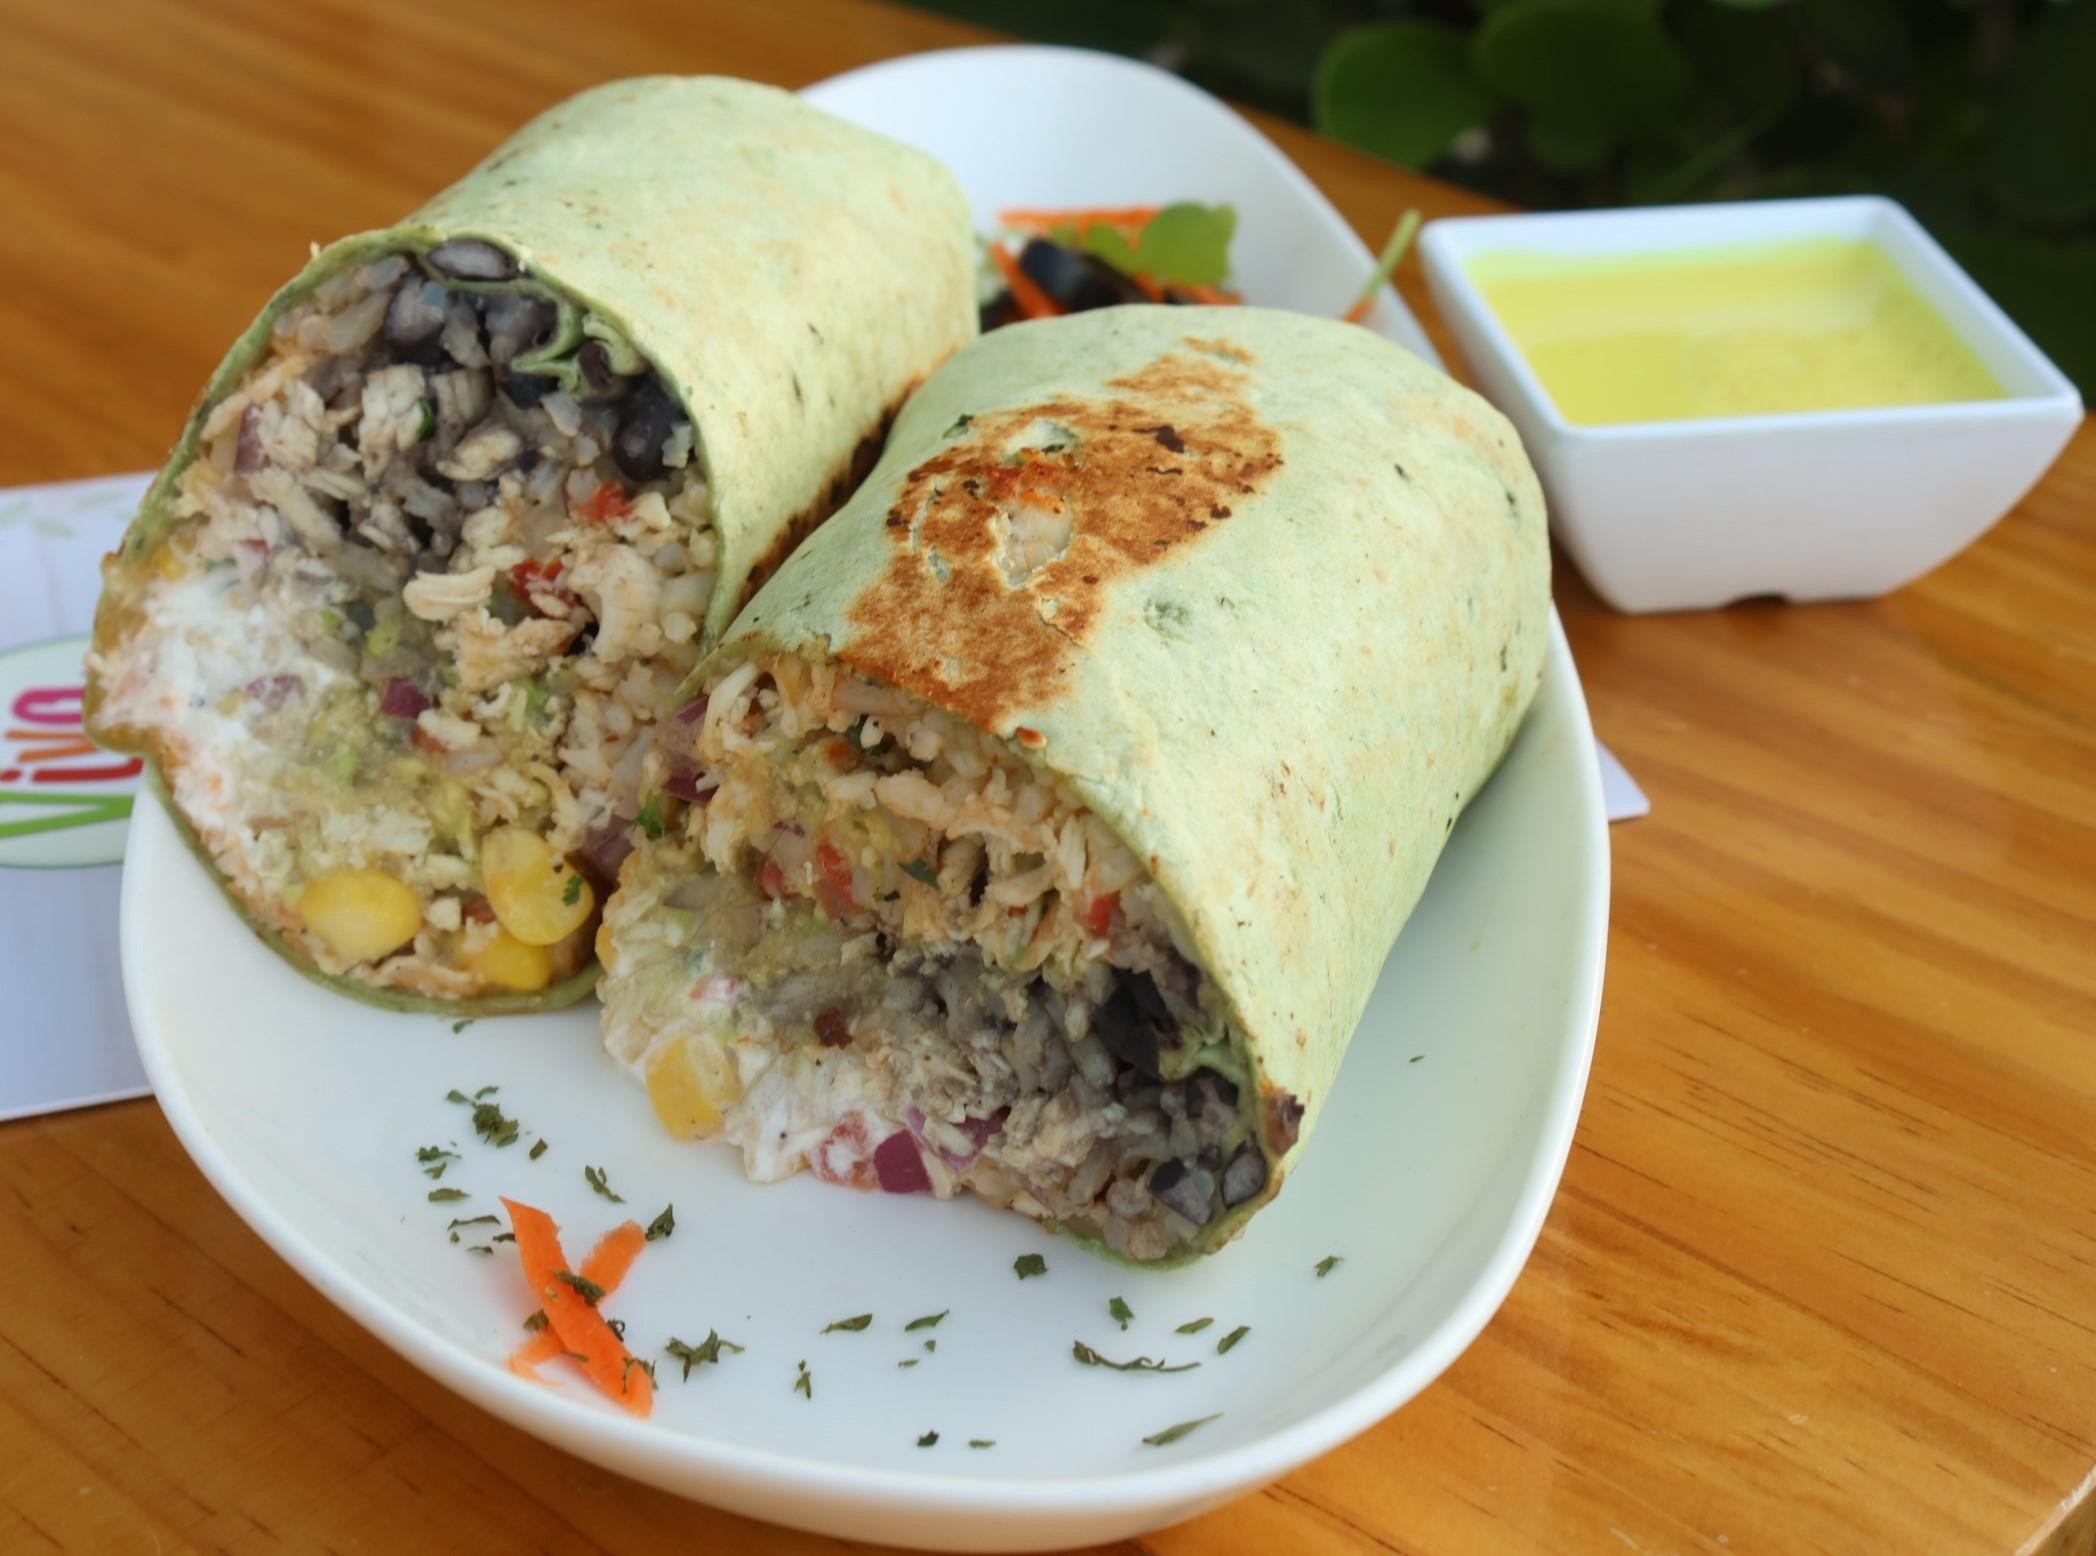 Mexican Burrito Wrap